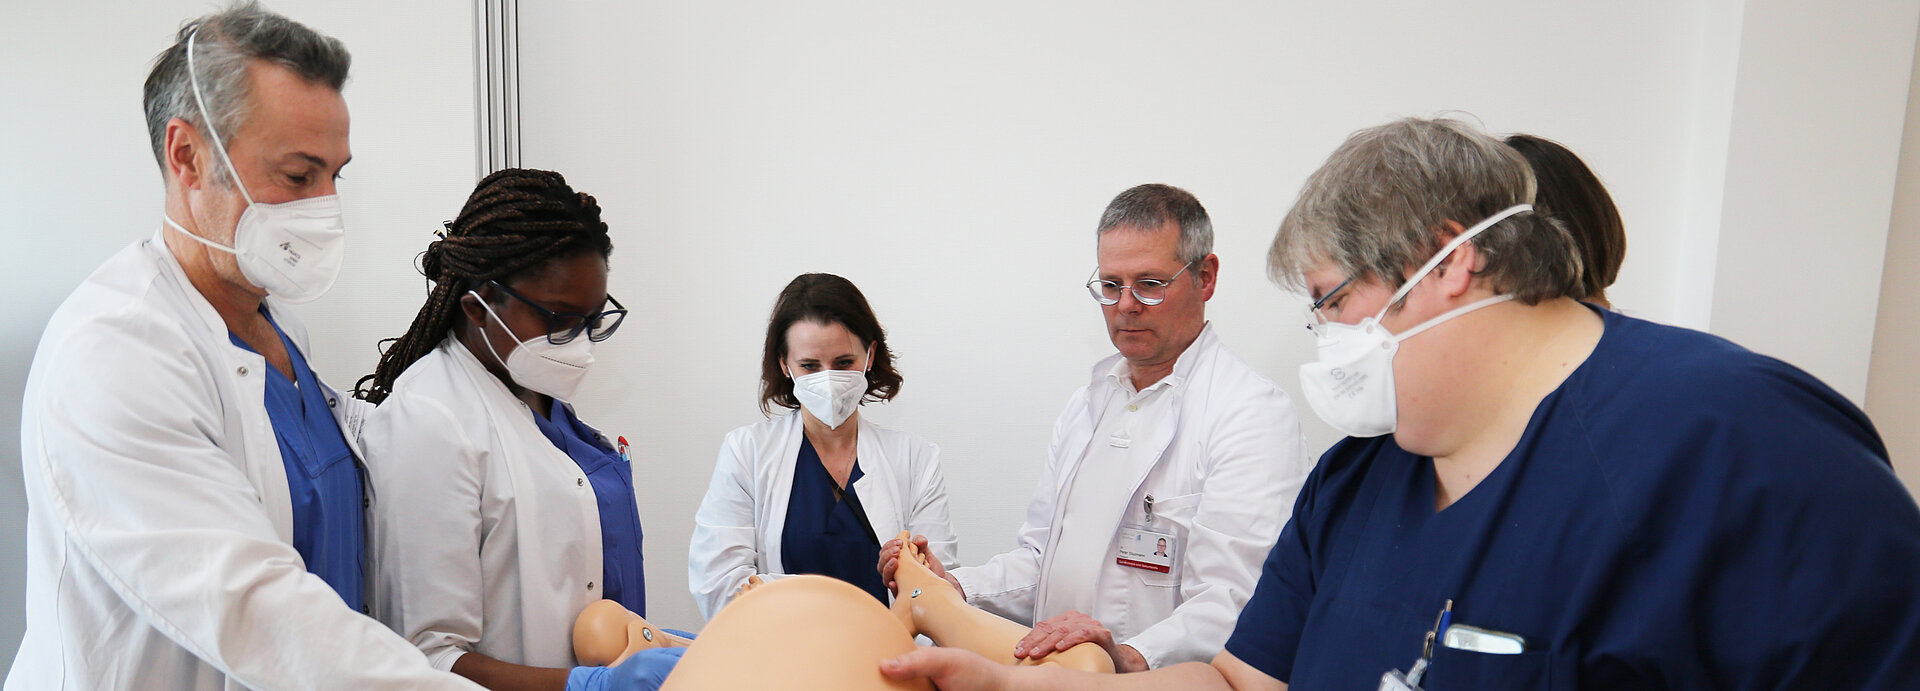 Das Team der Geburtshilfe am Klinikum Wetzlar unter der Leitung von Chefarzt Dr. Peter Stuzmann trainierte verschiedene Notfallszenarien mit einer Simulationspuppe.